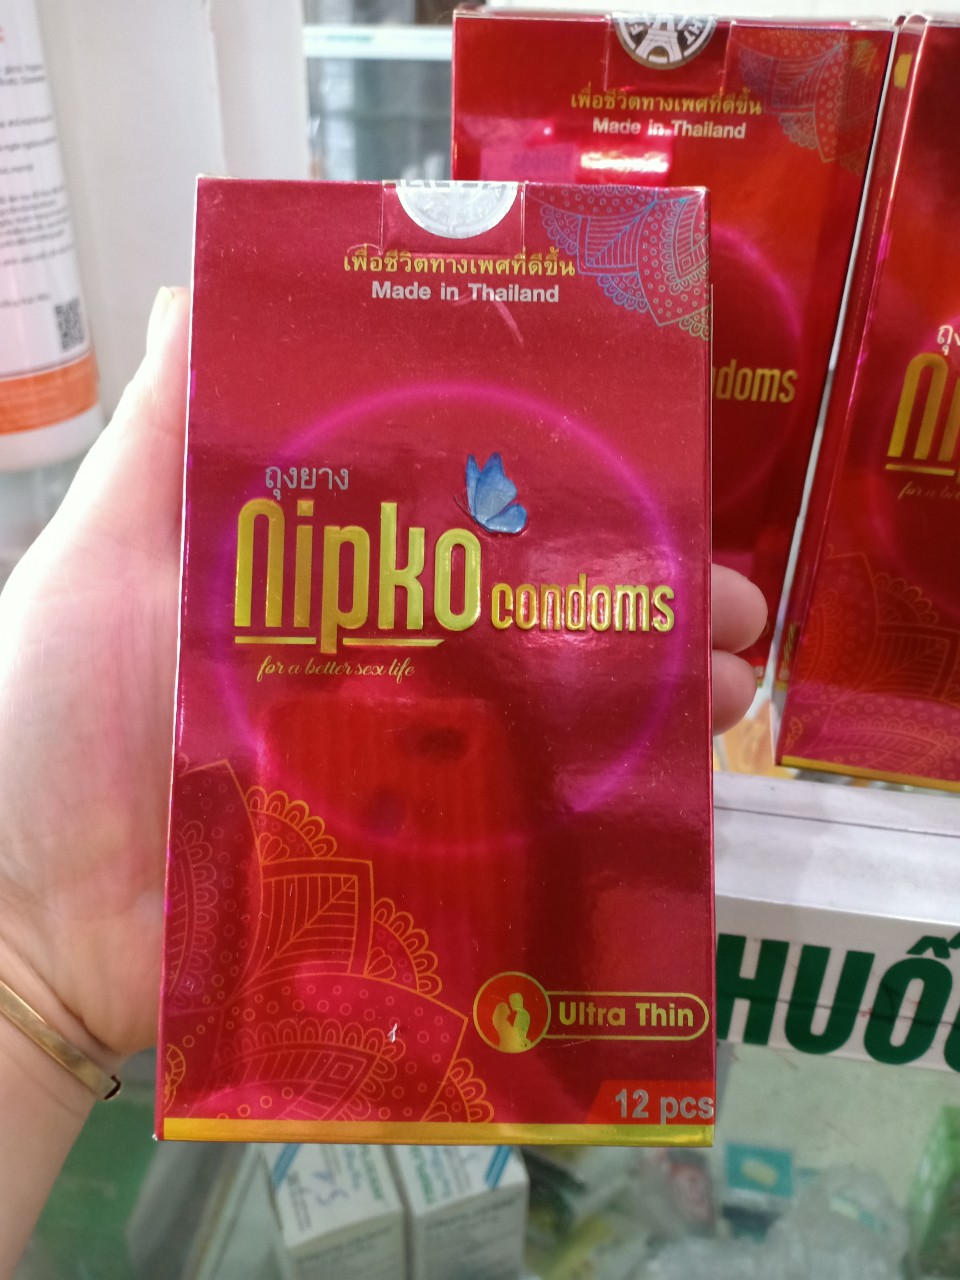 Bao cao su cao cấp NIPKO chính hãng nhập khẩu Thái Lan siêu mỏng gân gai